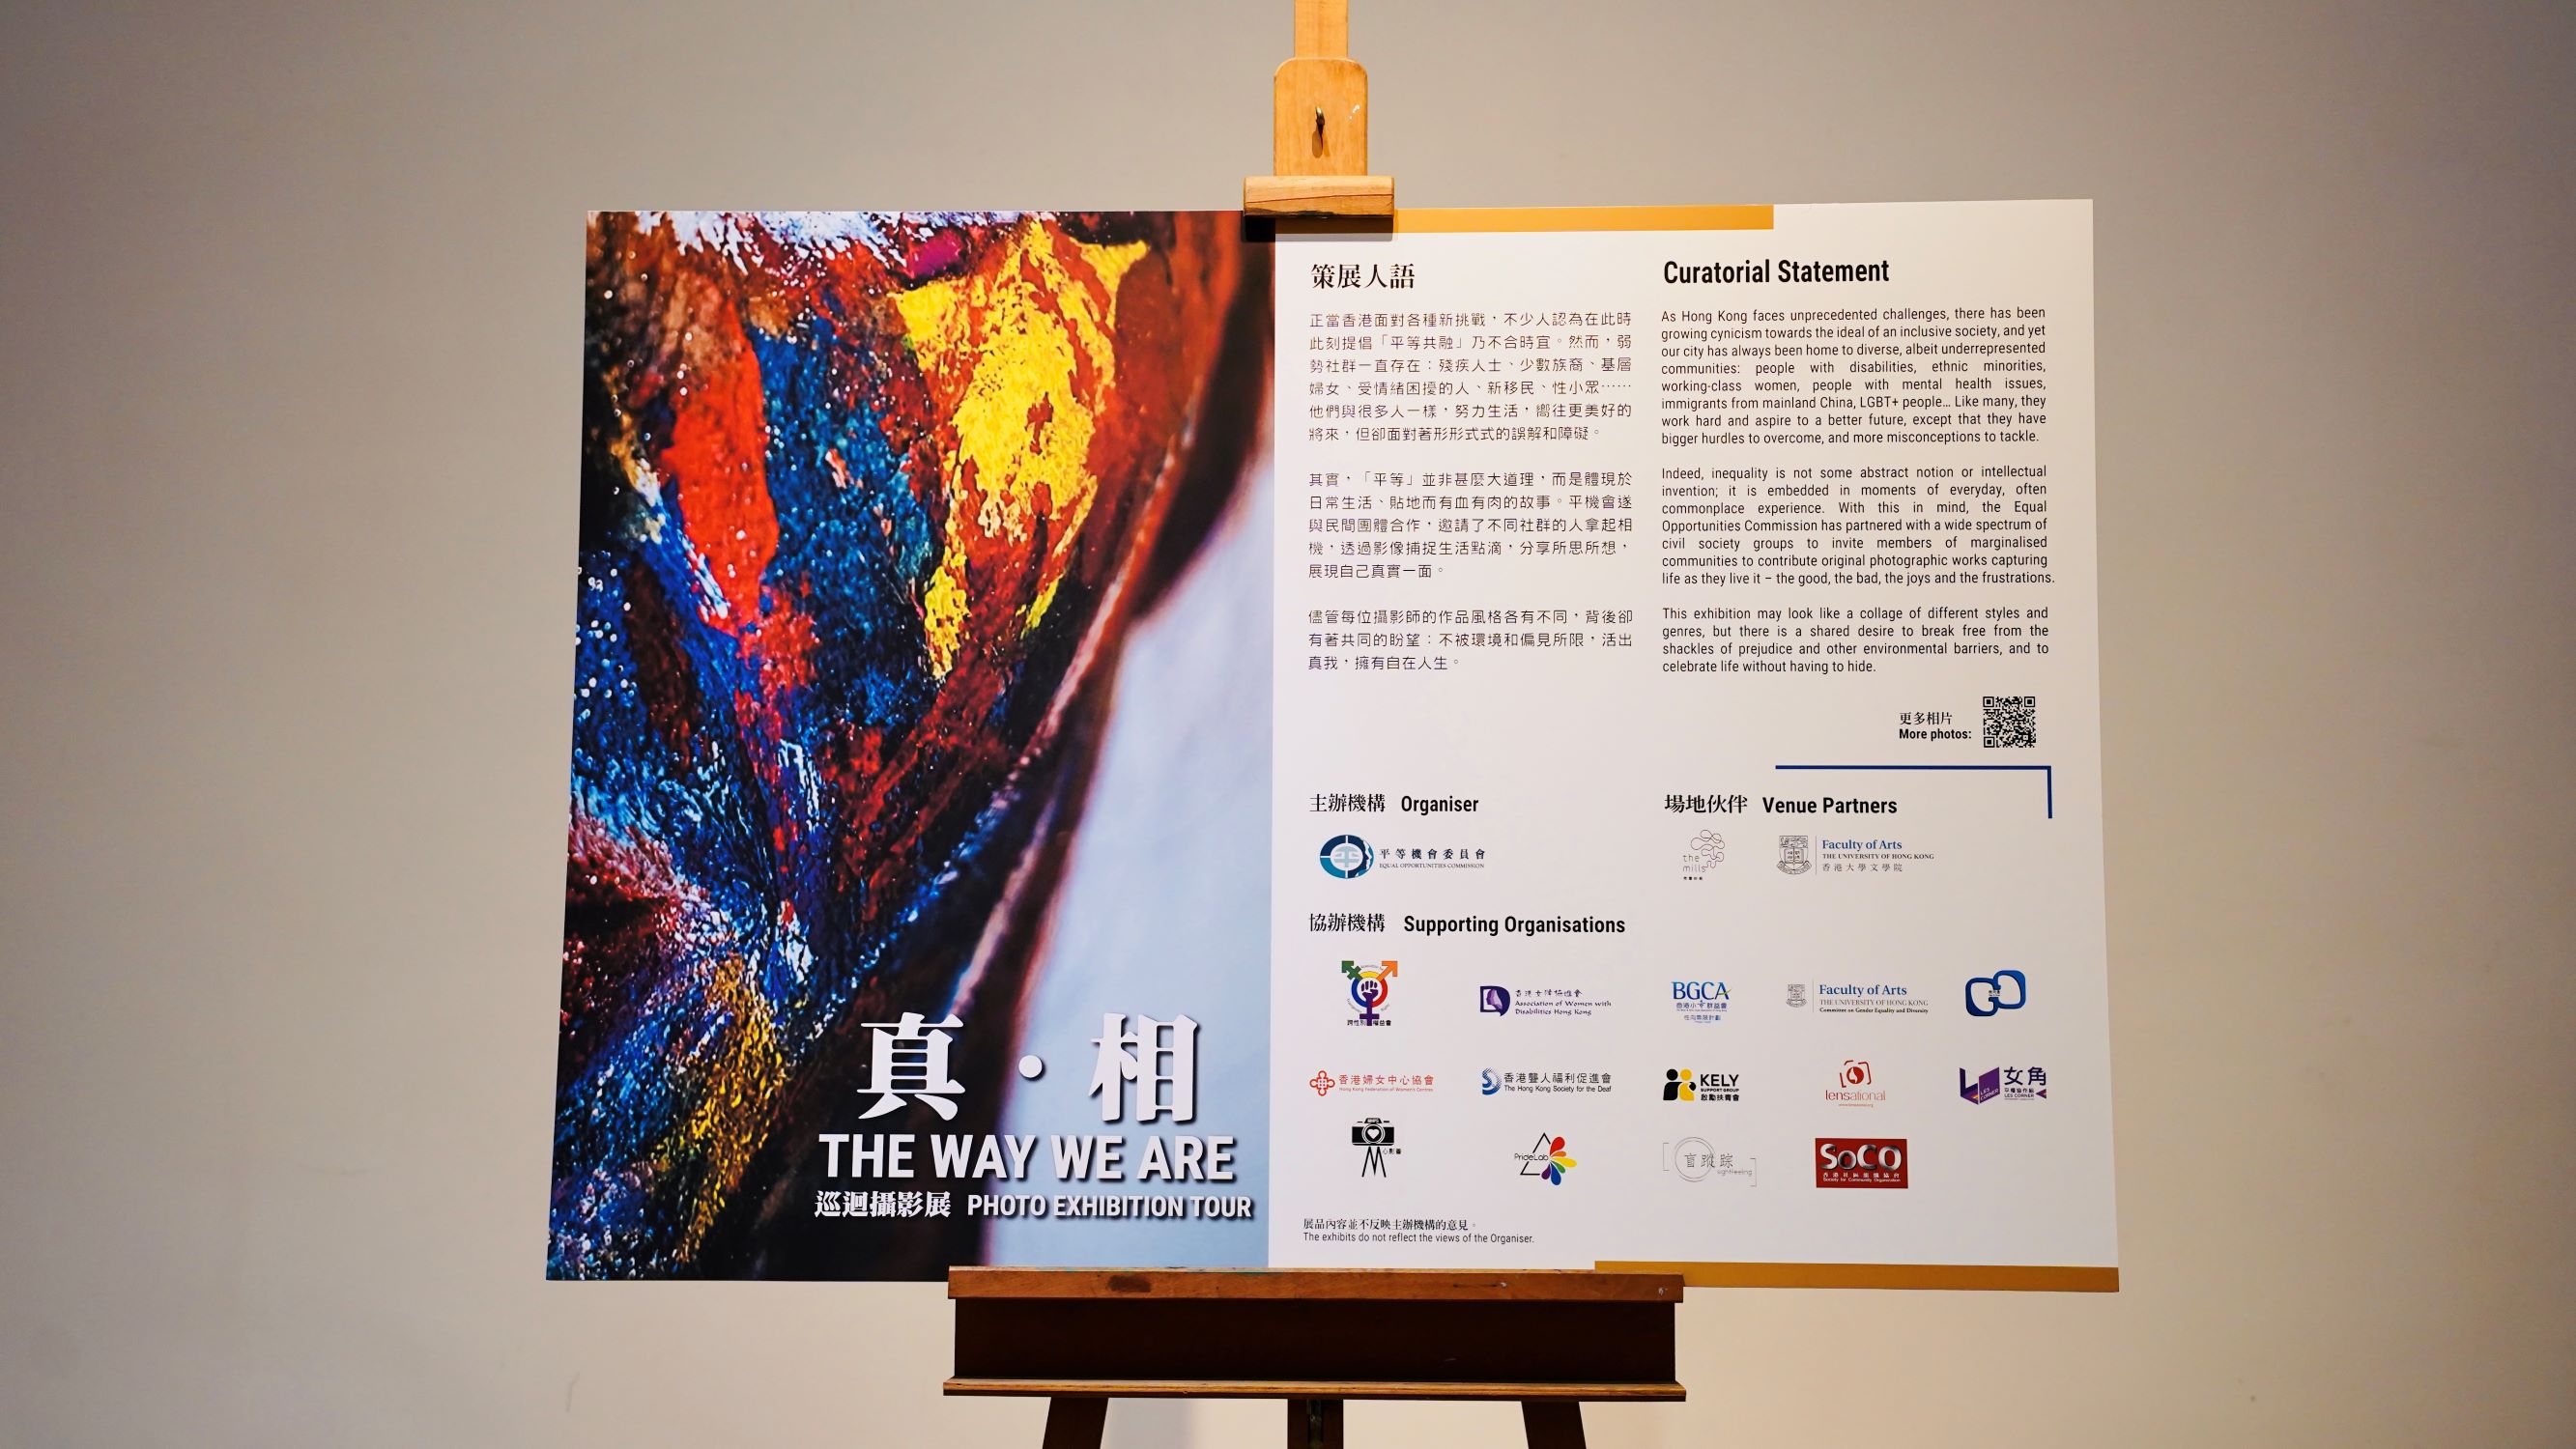 「真․相」攝影展將會於3月6日至23日在香港大學逸夫教學樓地下舉行，歡迎蒞臨參觀。